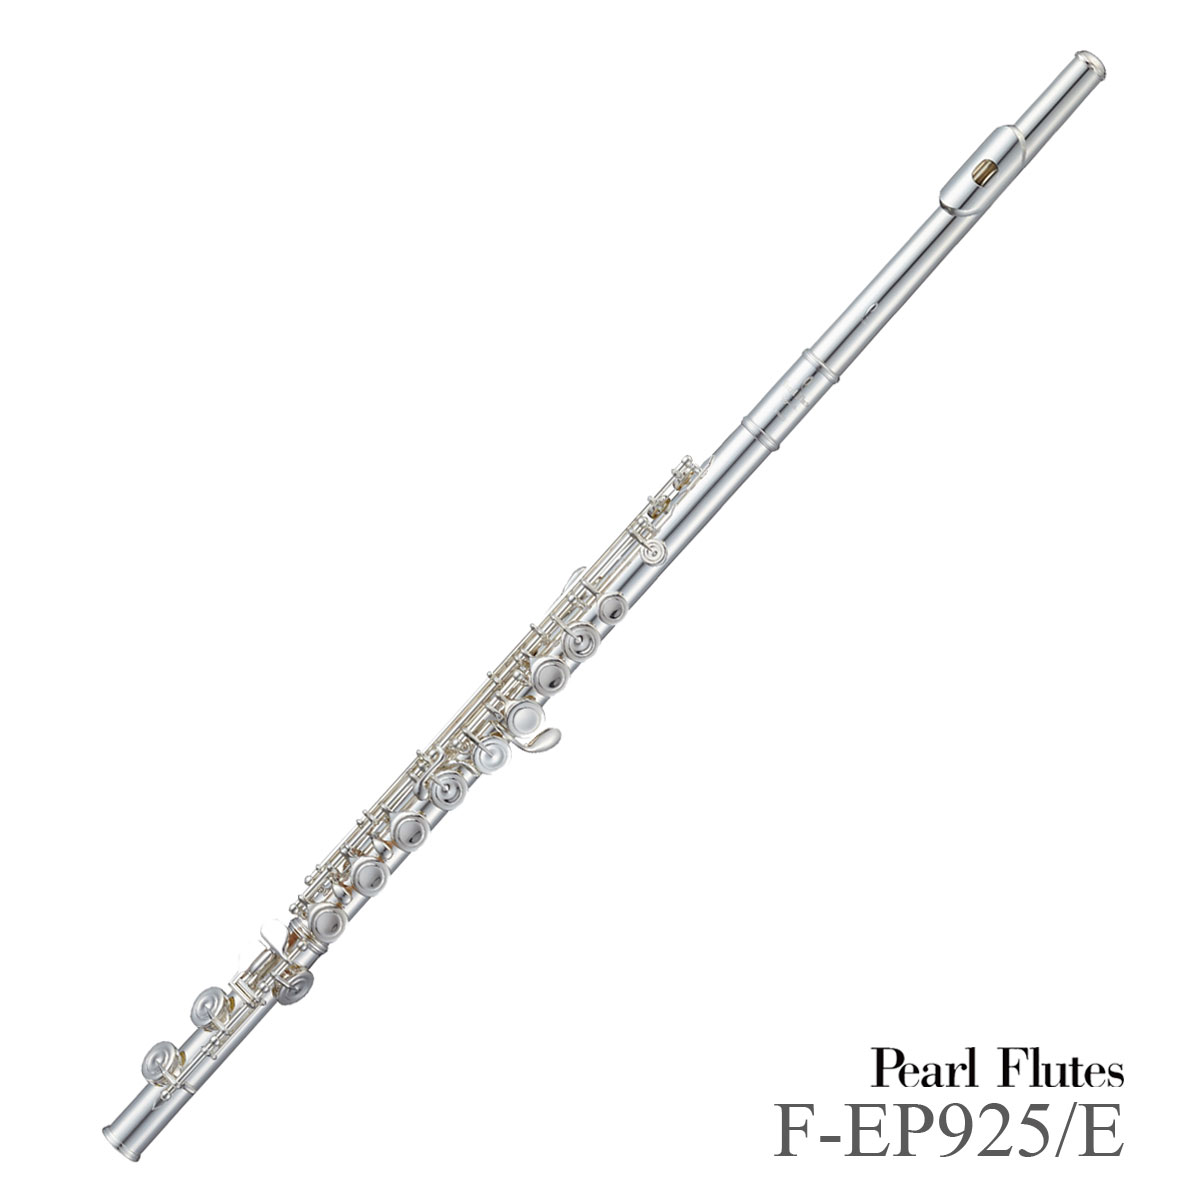 Pearl Flute / F-EP925/E パール エレガンテプリモ 管体銀製 オフセットカバードキィ 出荷前調整 5年保証